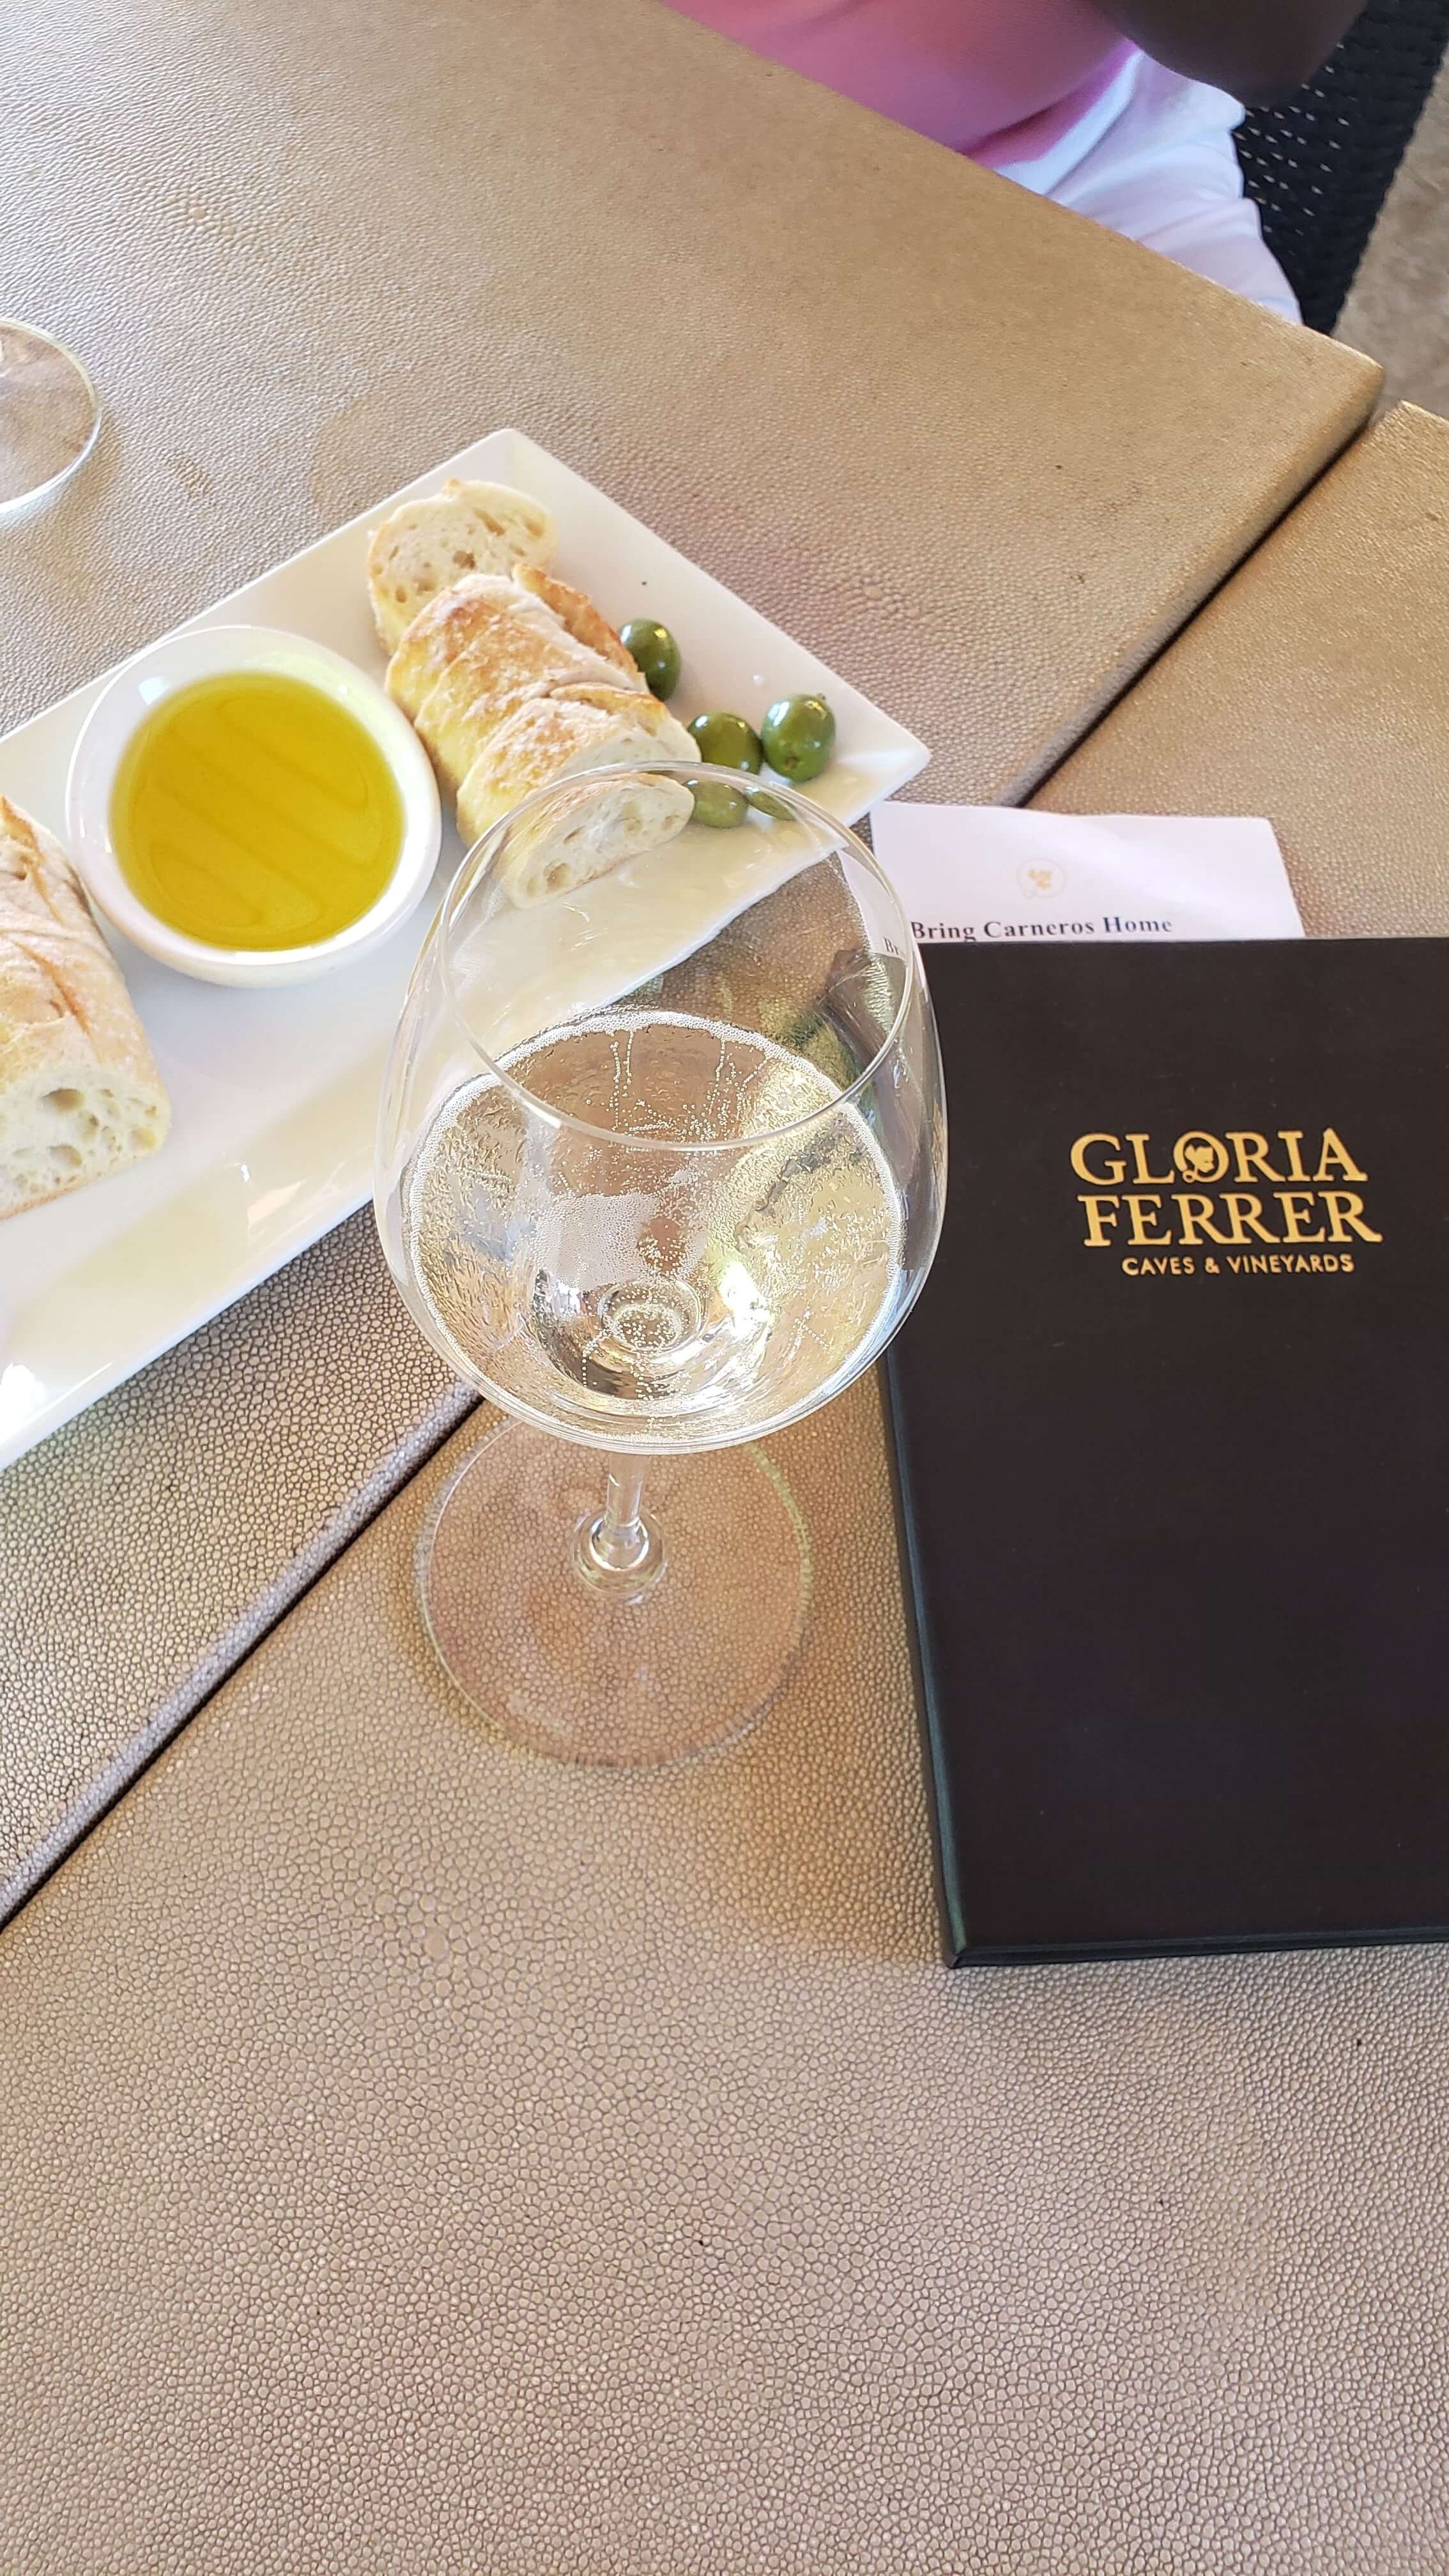 Wine tasting at Gloria Ferrer in Sonoma County